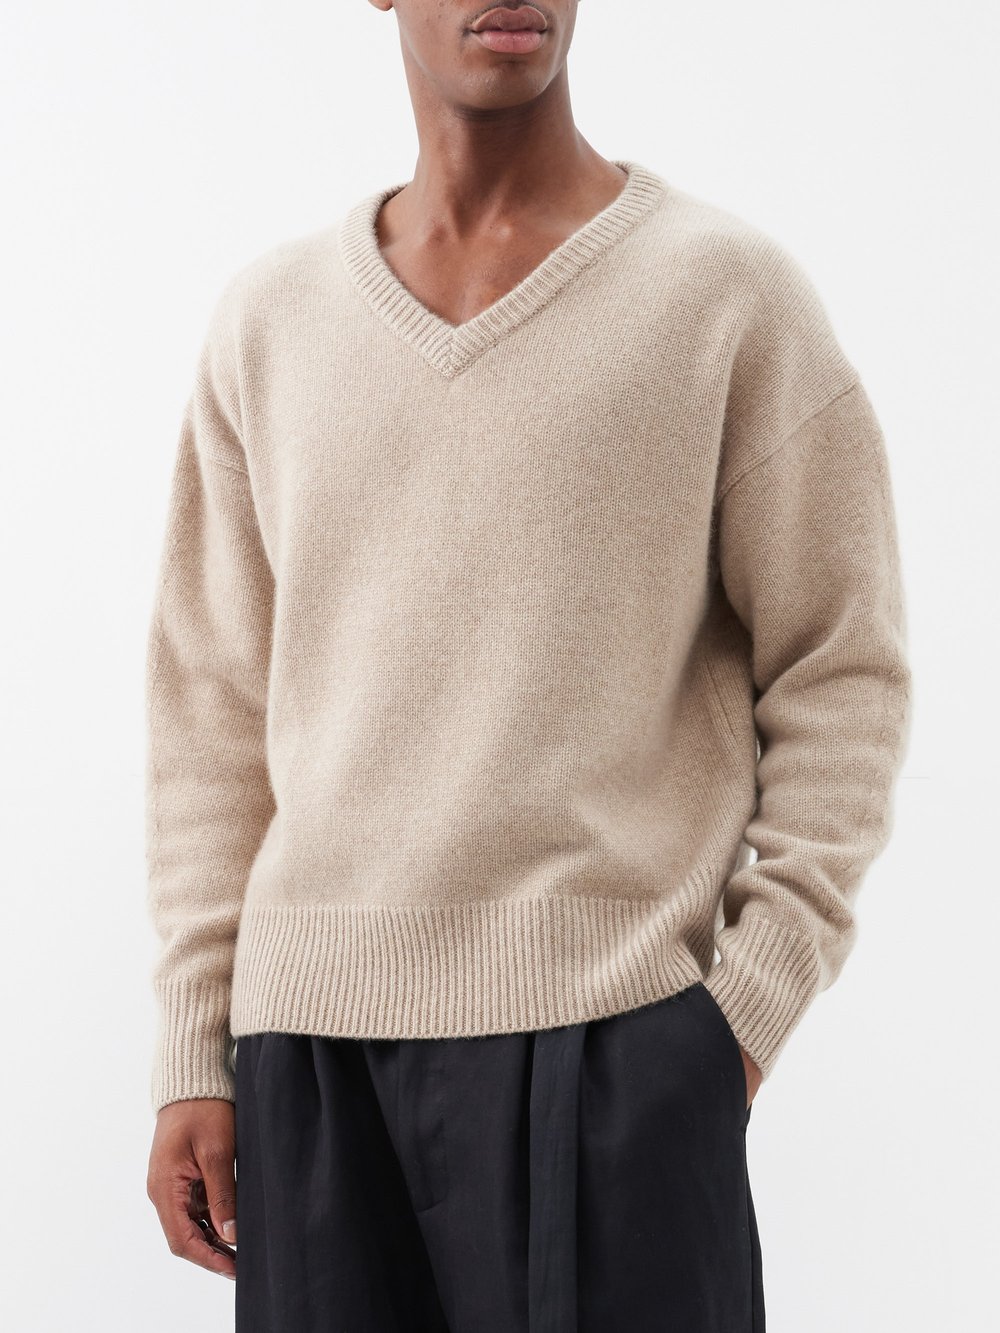 Кашемировый свитер mr battersea с v-образным вырезом Arch4, бежевый